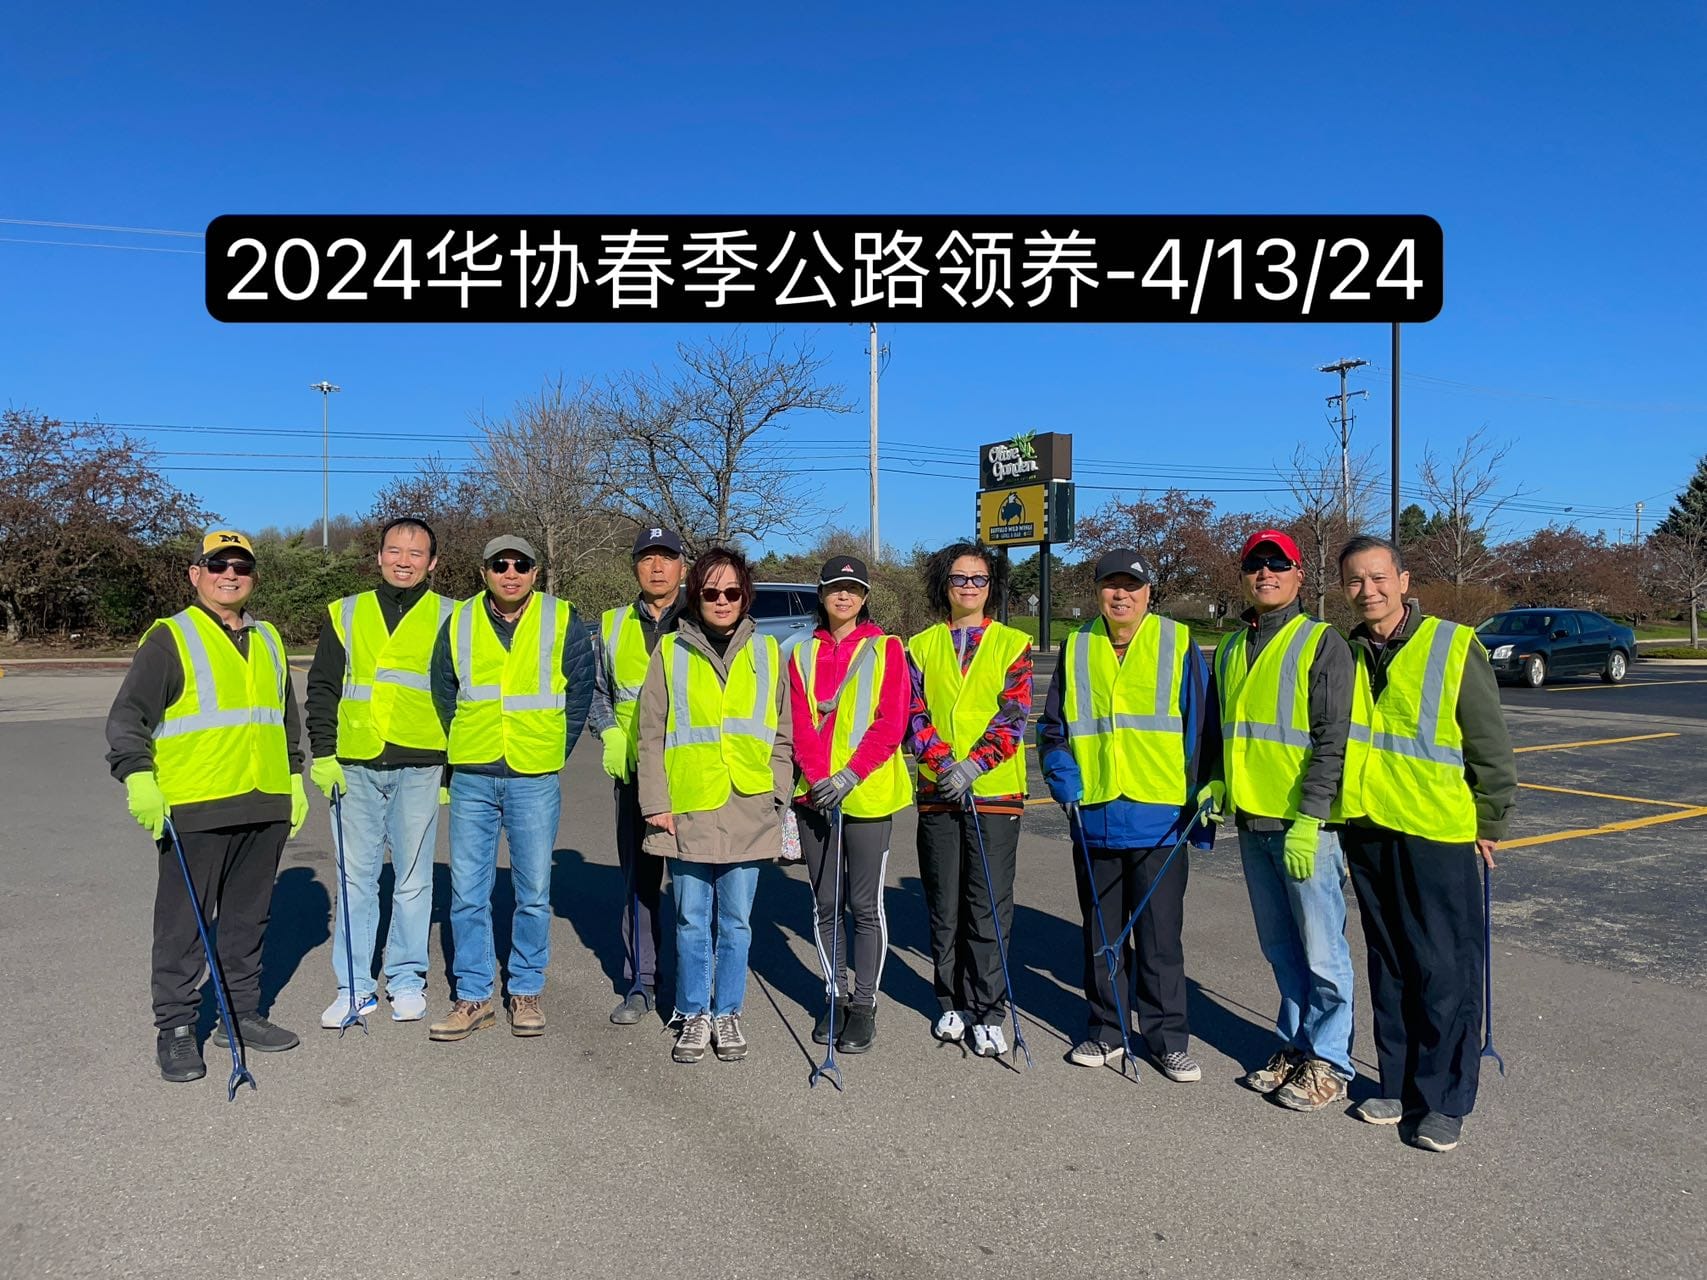 西密华协春季高速公路清洁活动圆满完成！